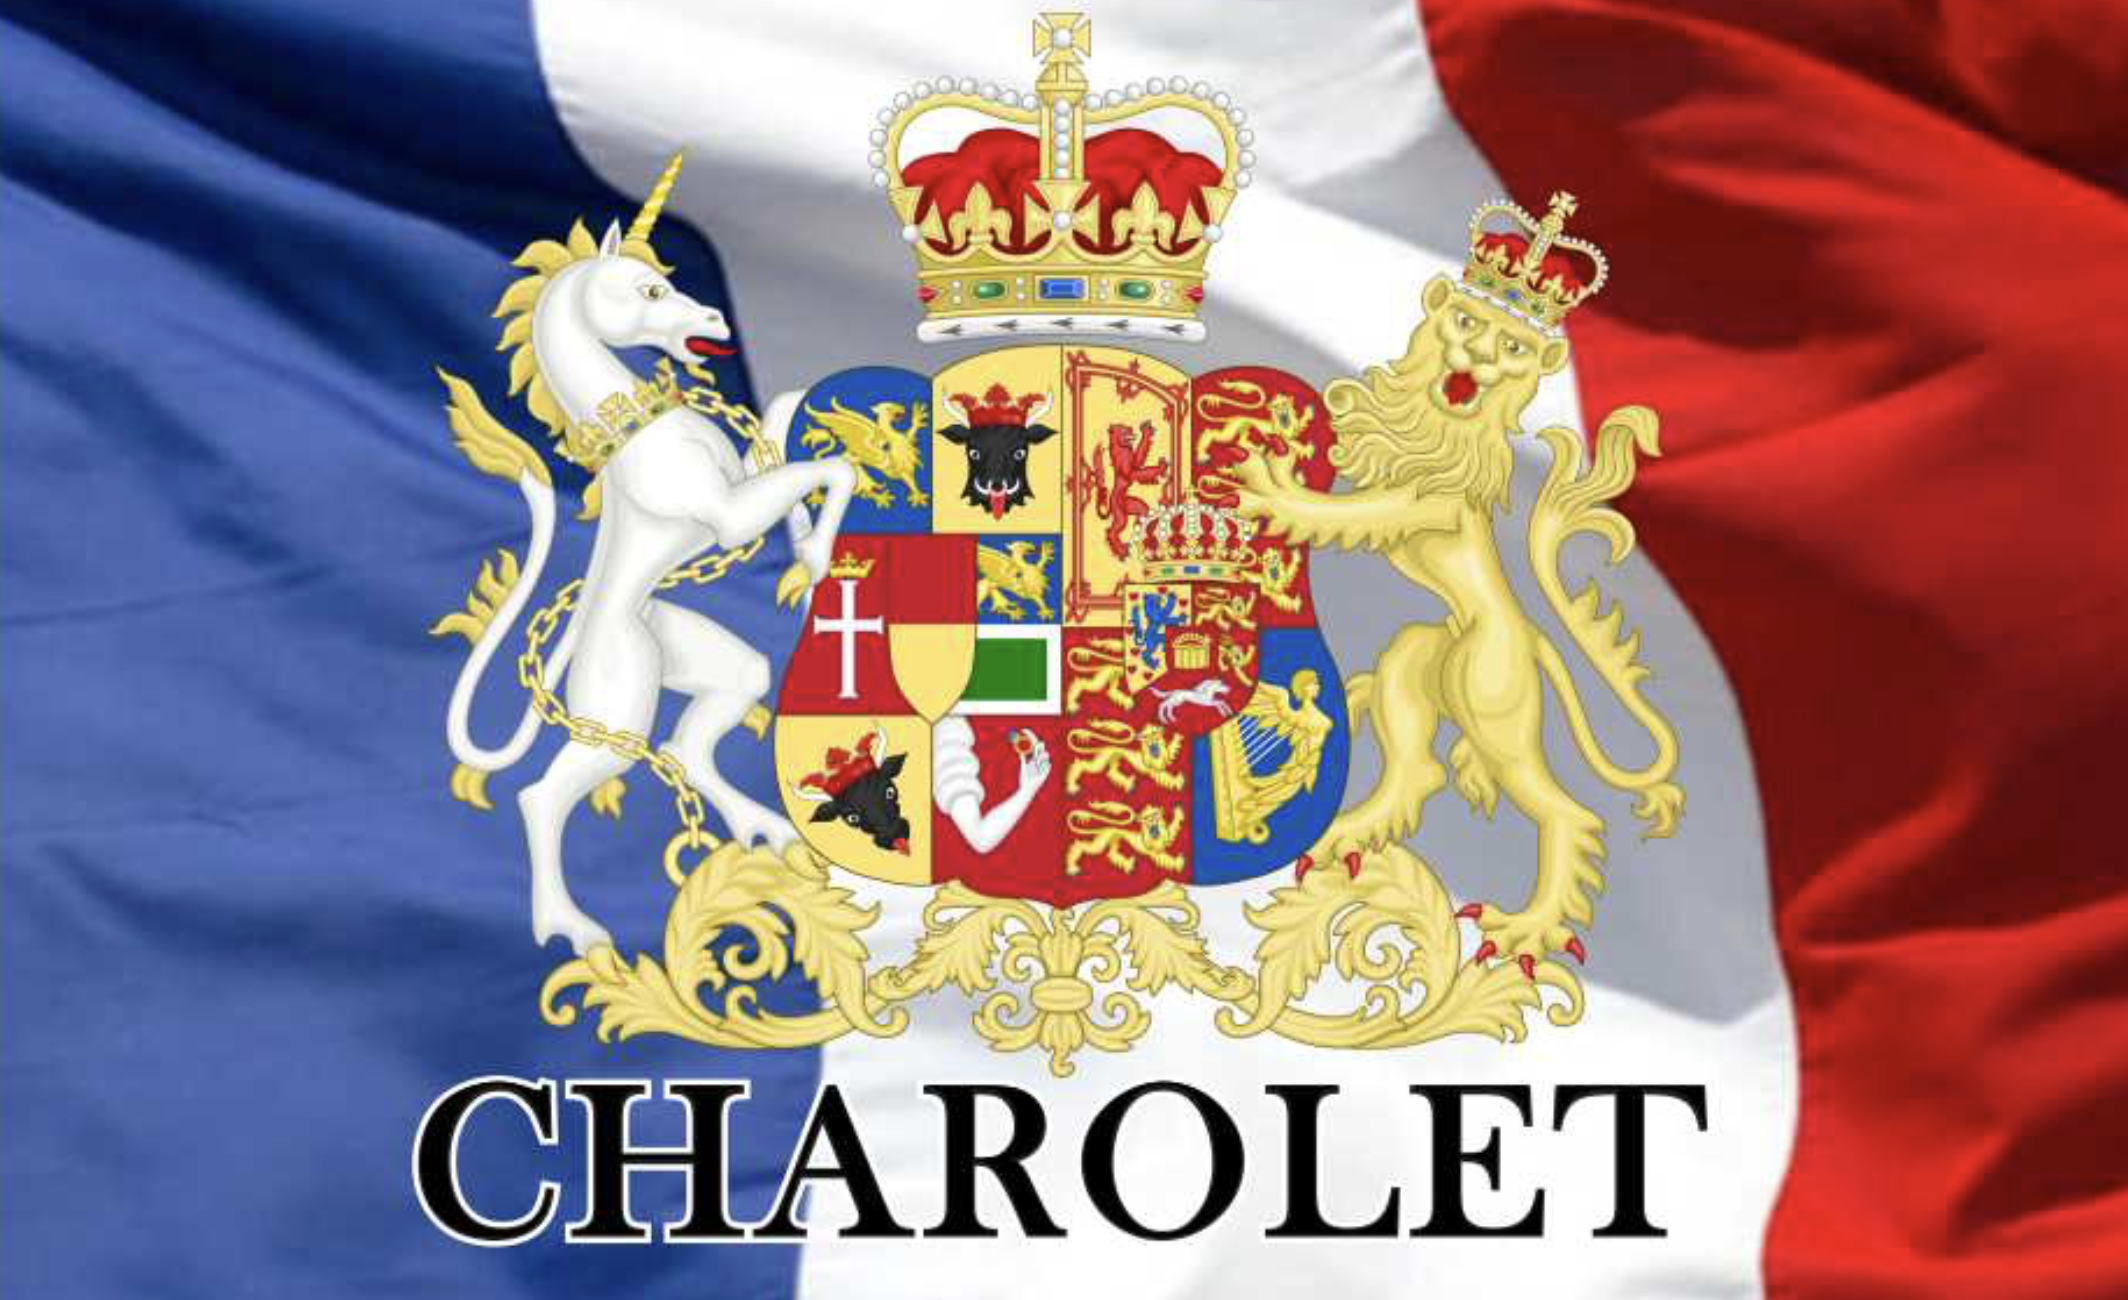 Charolet Family Flag